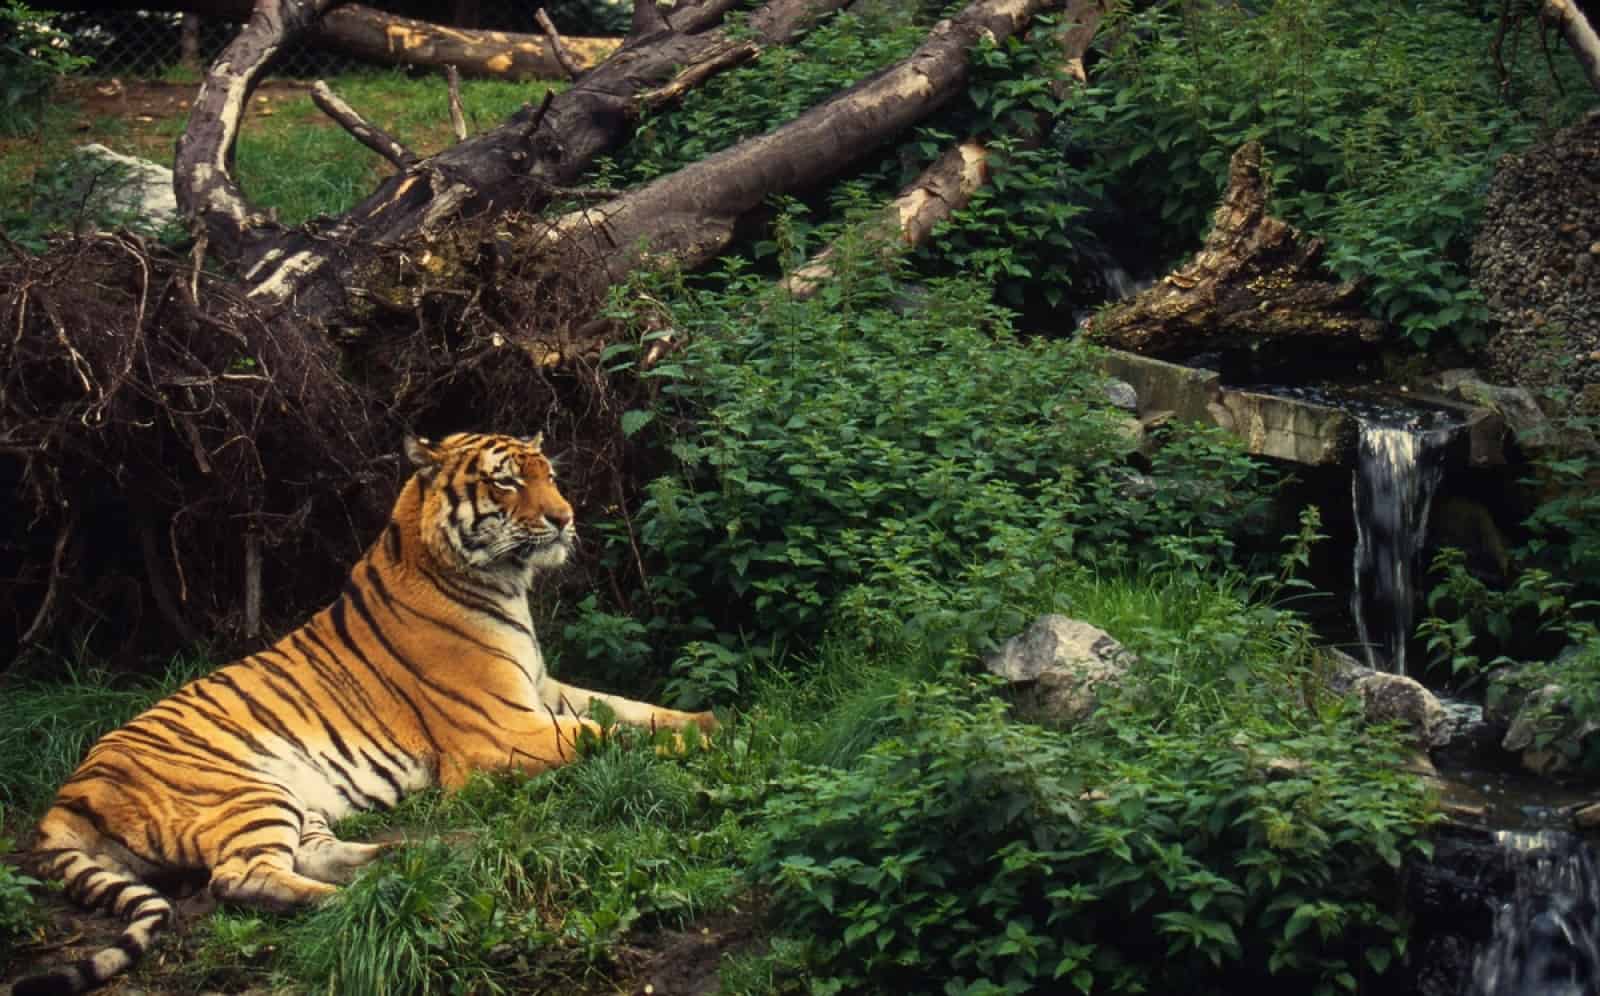 Ein Sibirischer Tiger von 360 Exemplaren